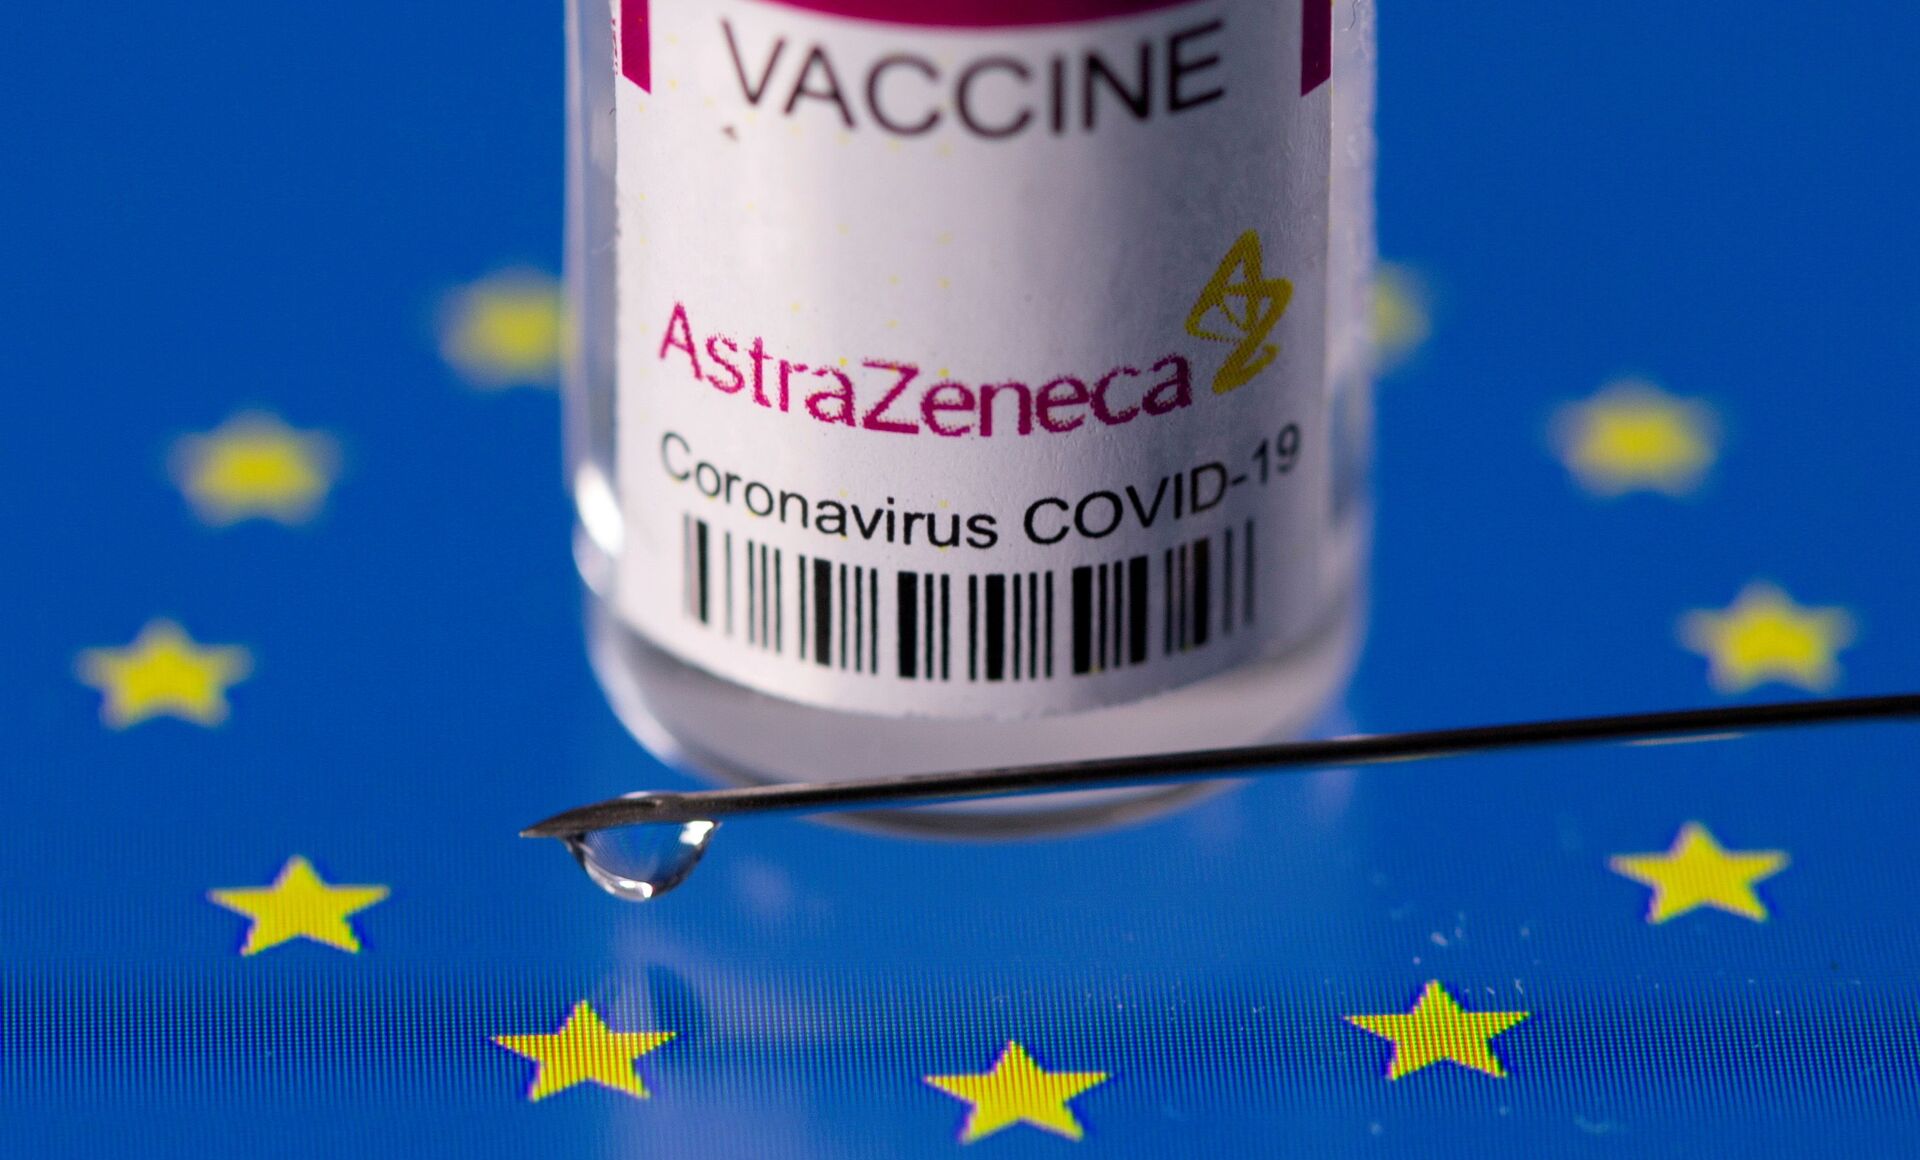 Estudo clínico com 3ª dose da vacina AstraZeneca é autorizado pela Anvisa - Sputnik Brasil, 1920, 19.07.2021